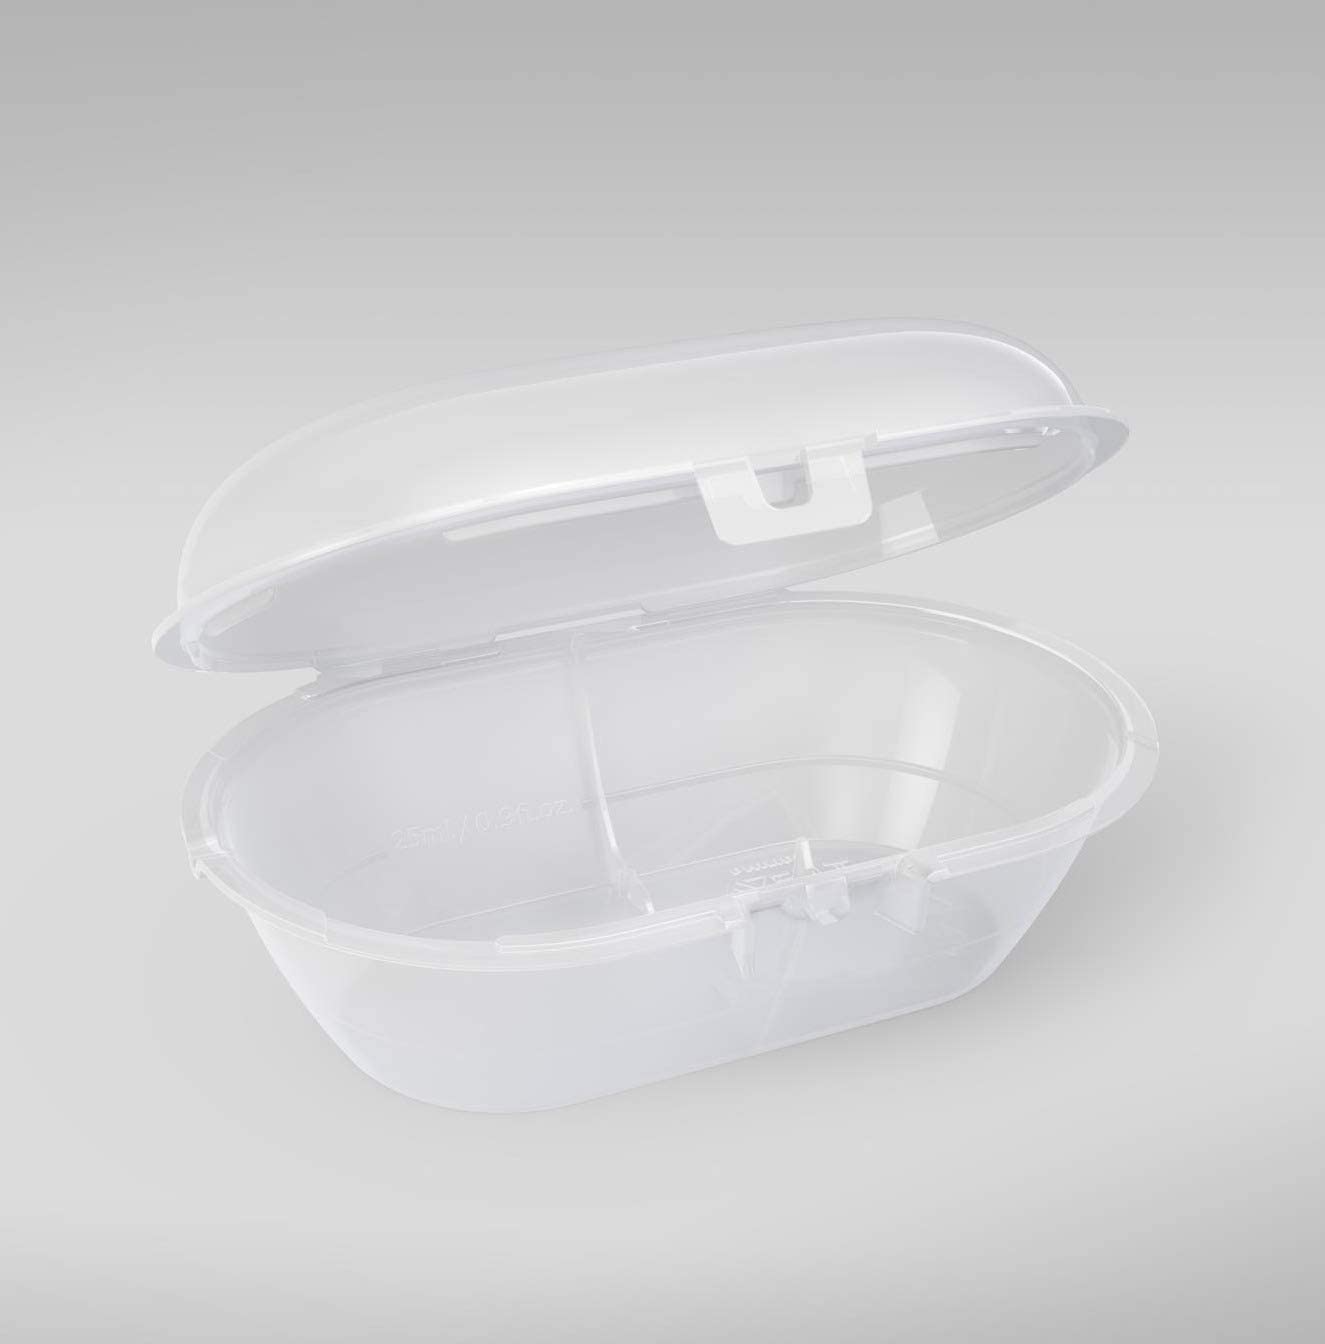 Philips Avent Pacote com 2 chupetas ultramacias - chupeta sem BPA para bebês de 6 a 18 meses (modelo SCF223/02)